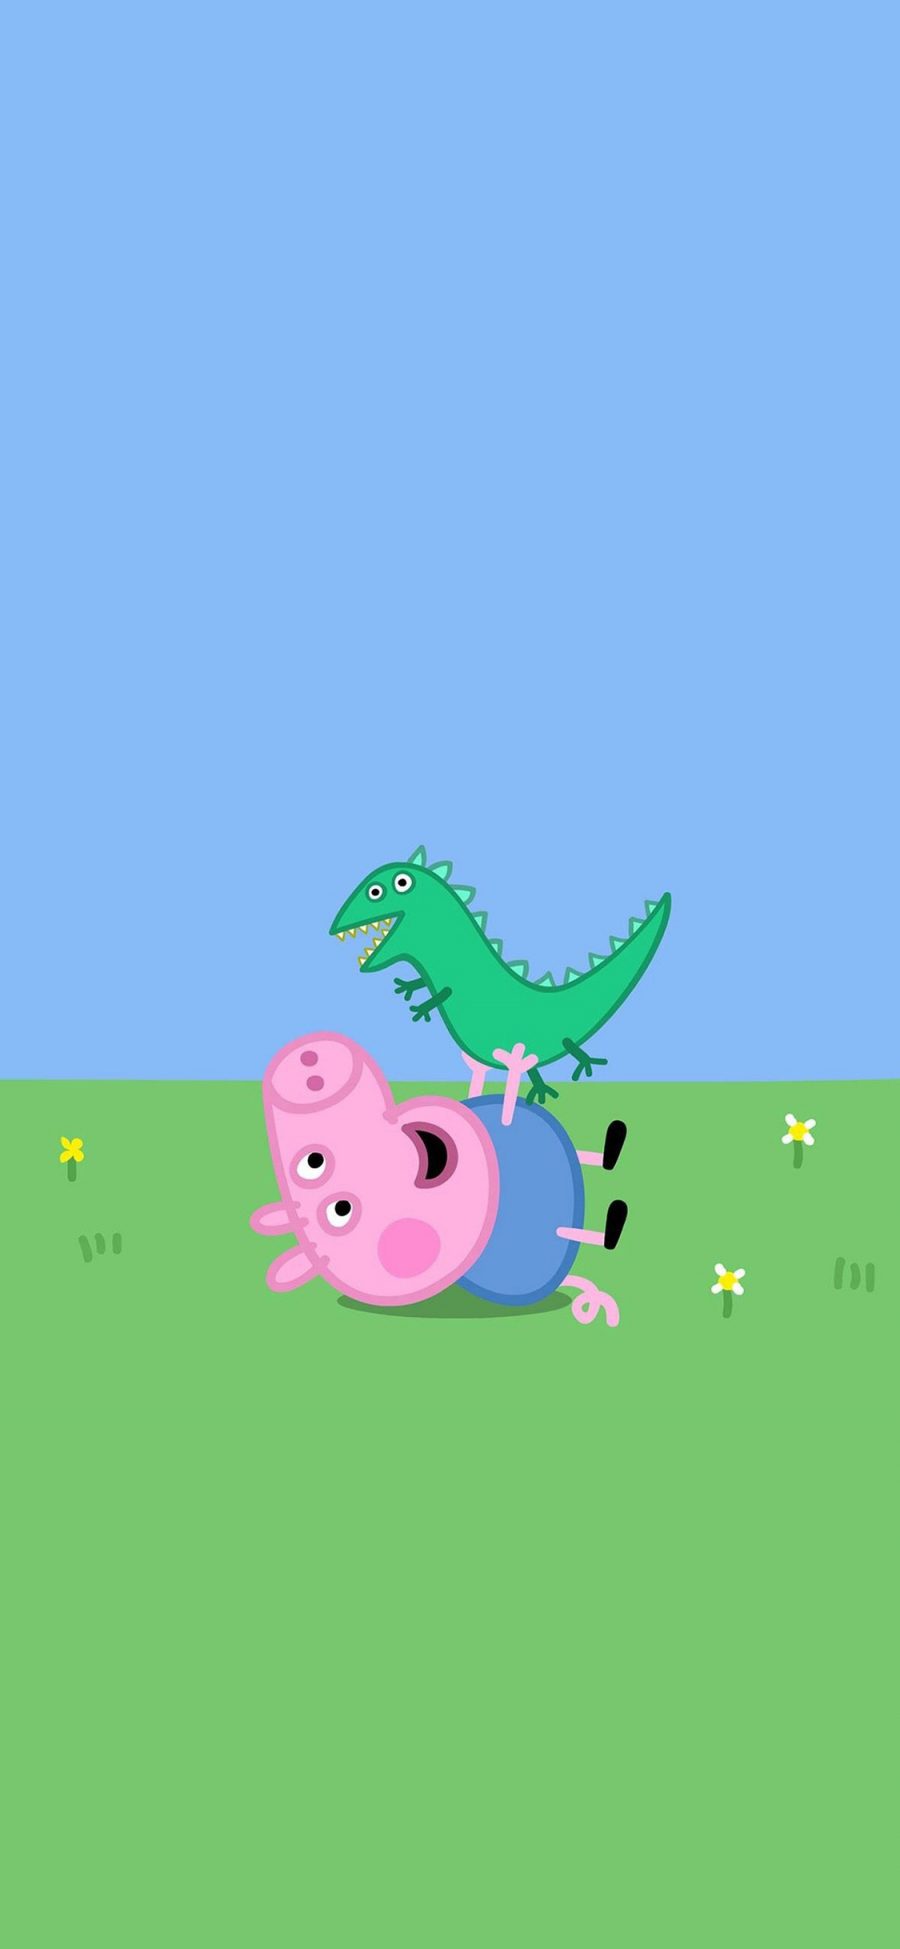 [2436×1125]小猪佩奇 peppa pig 卡通 动画片 苹果手机动漫壁纸图片